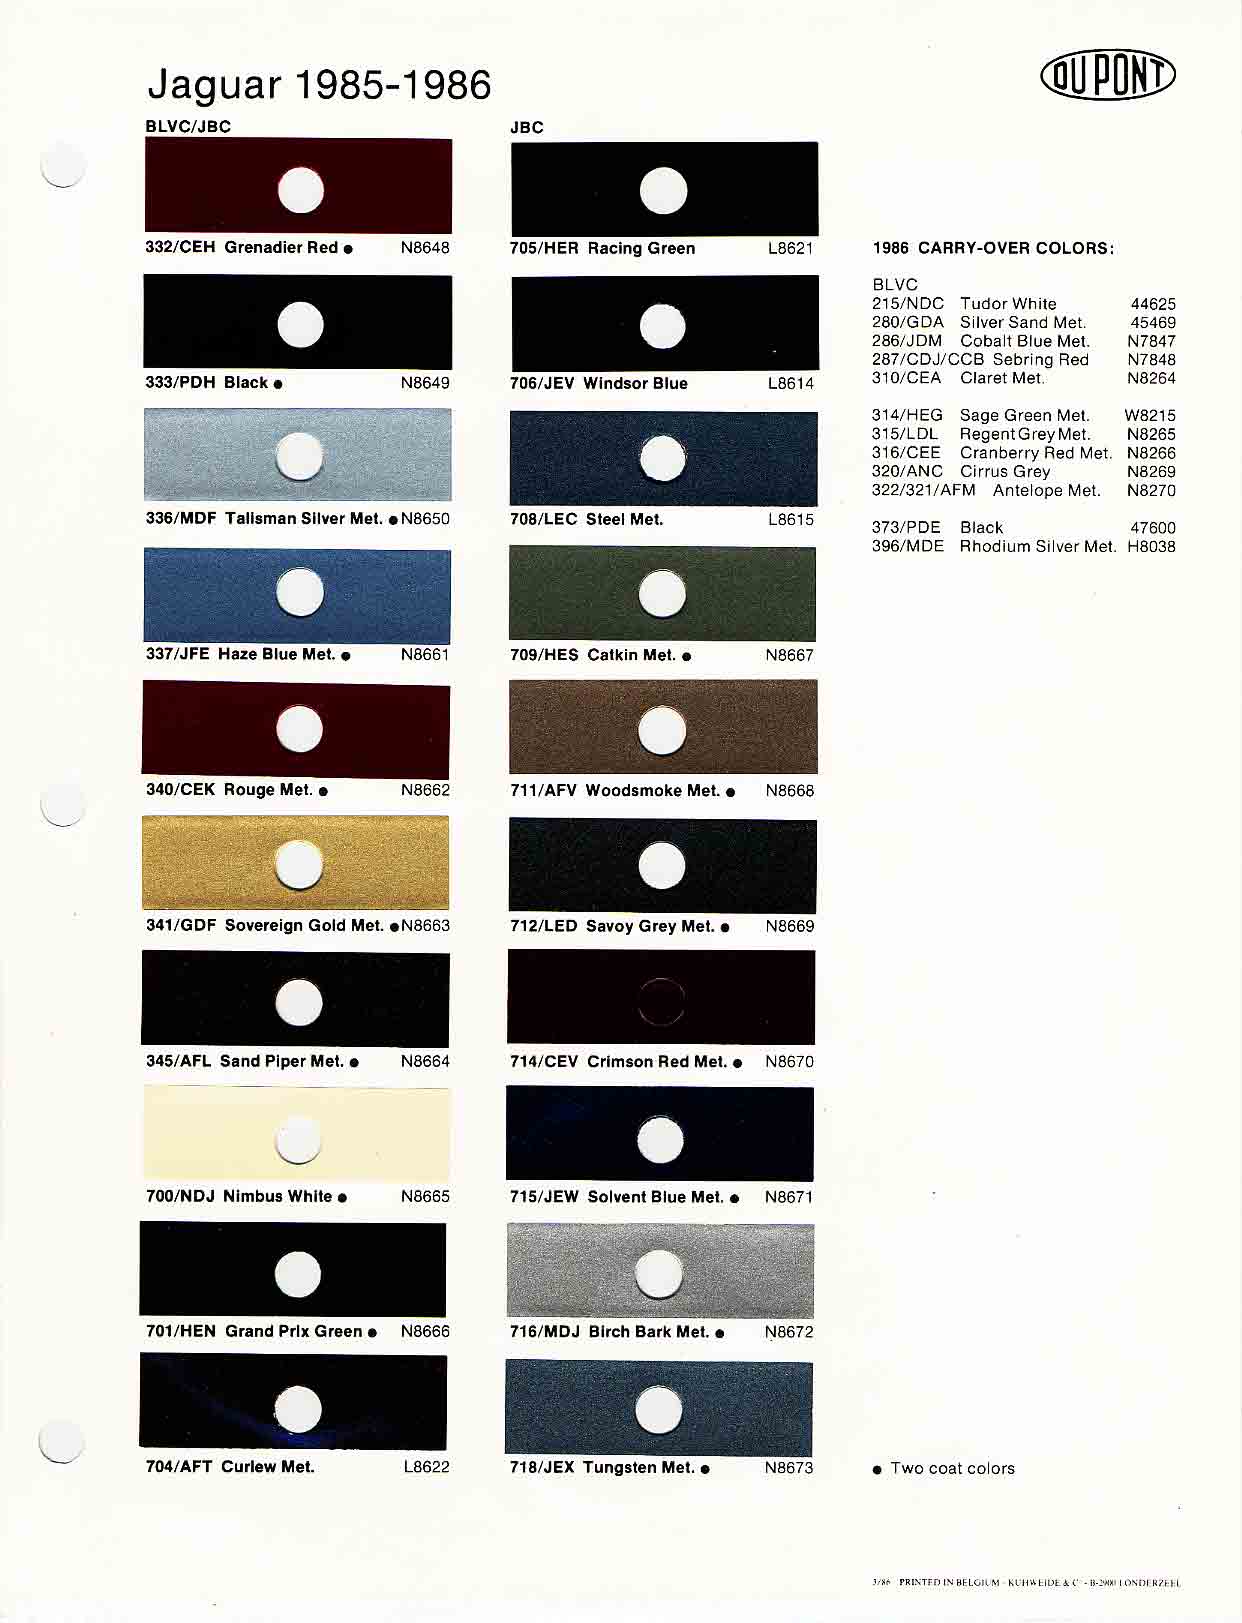 Jaguar Xjs Colour Chart